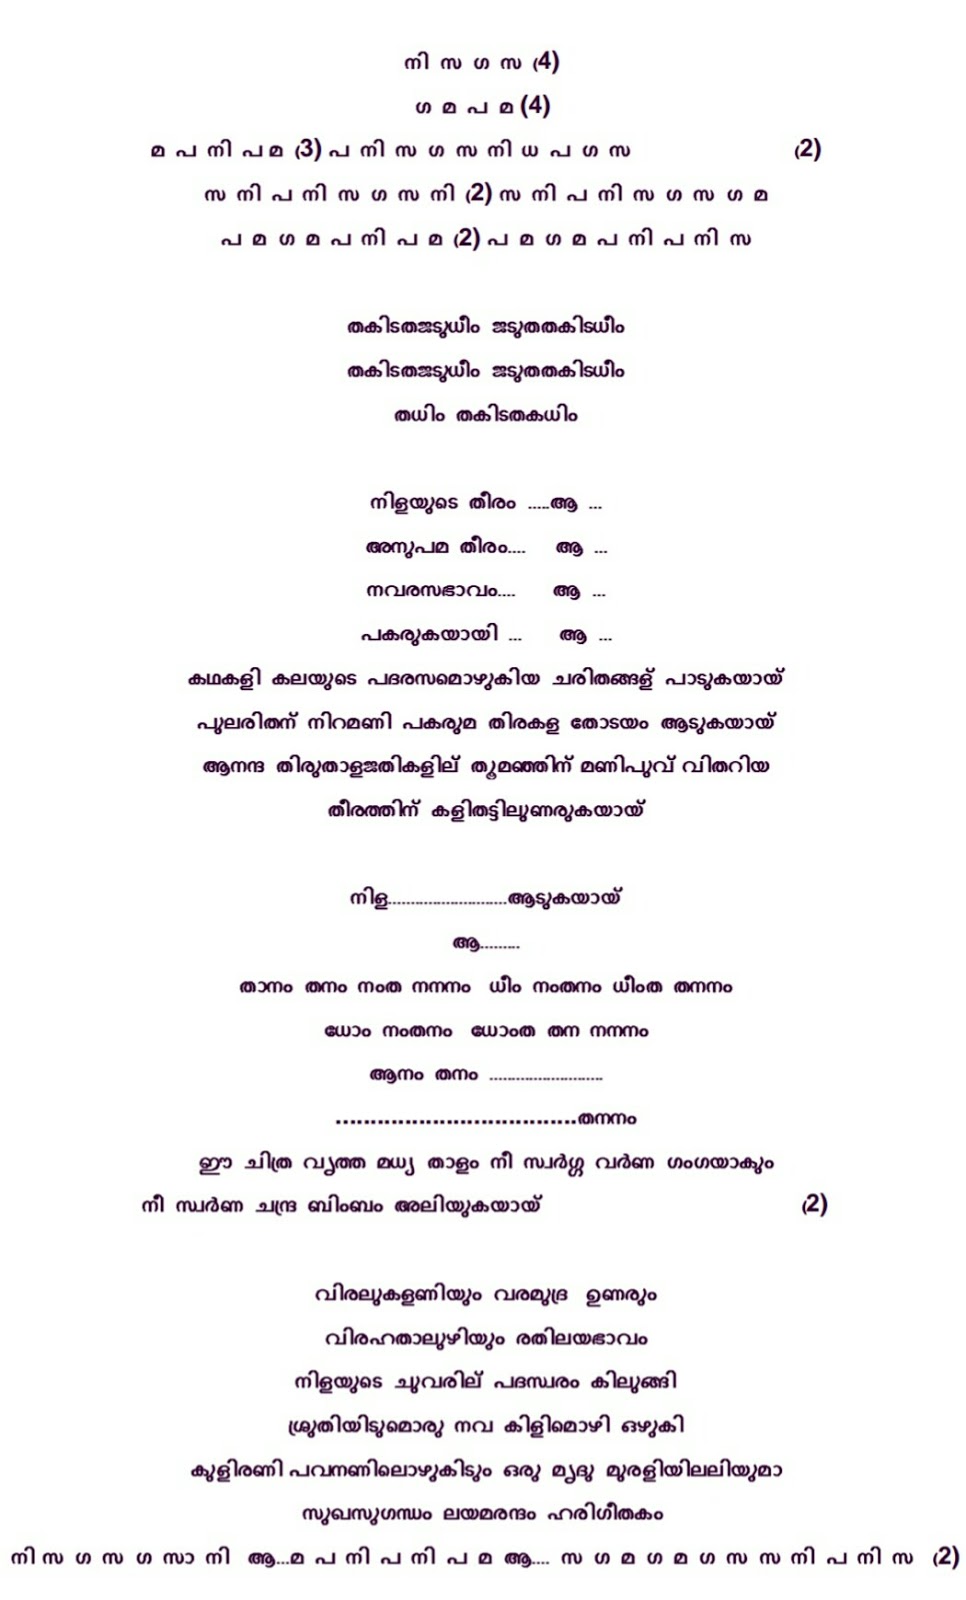 nilayude theeram malayalam group song